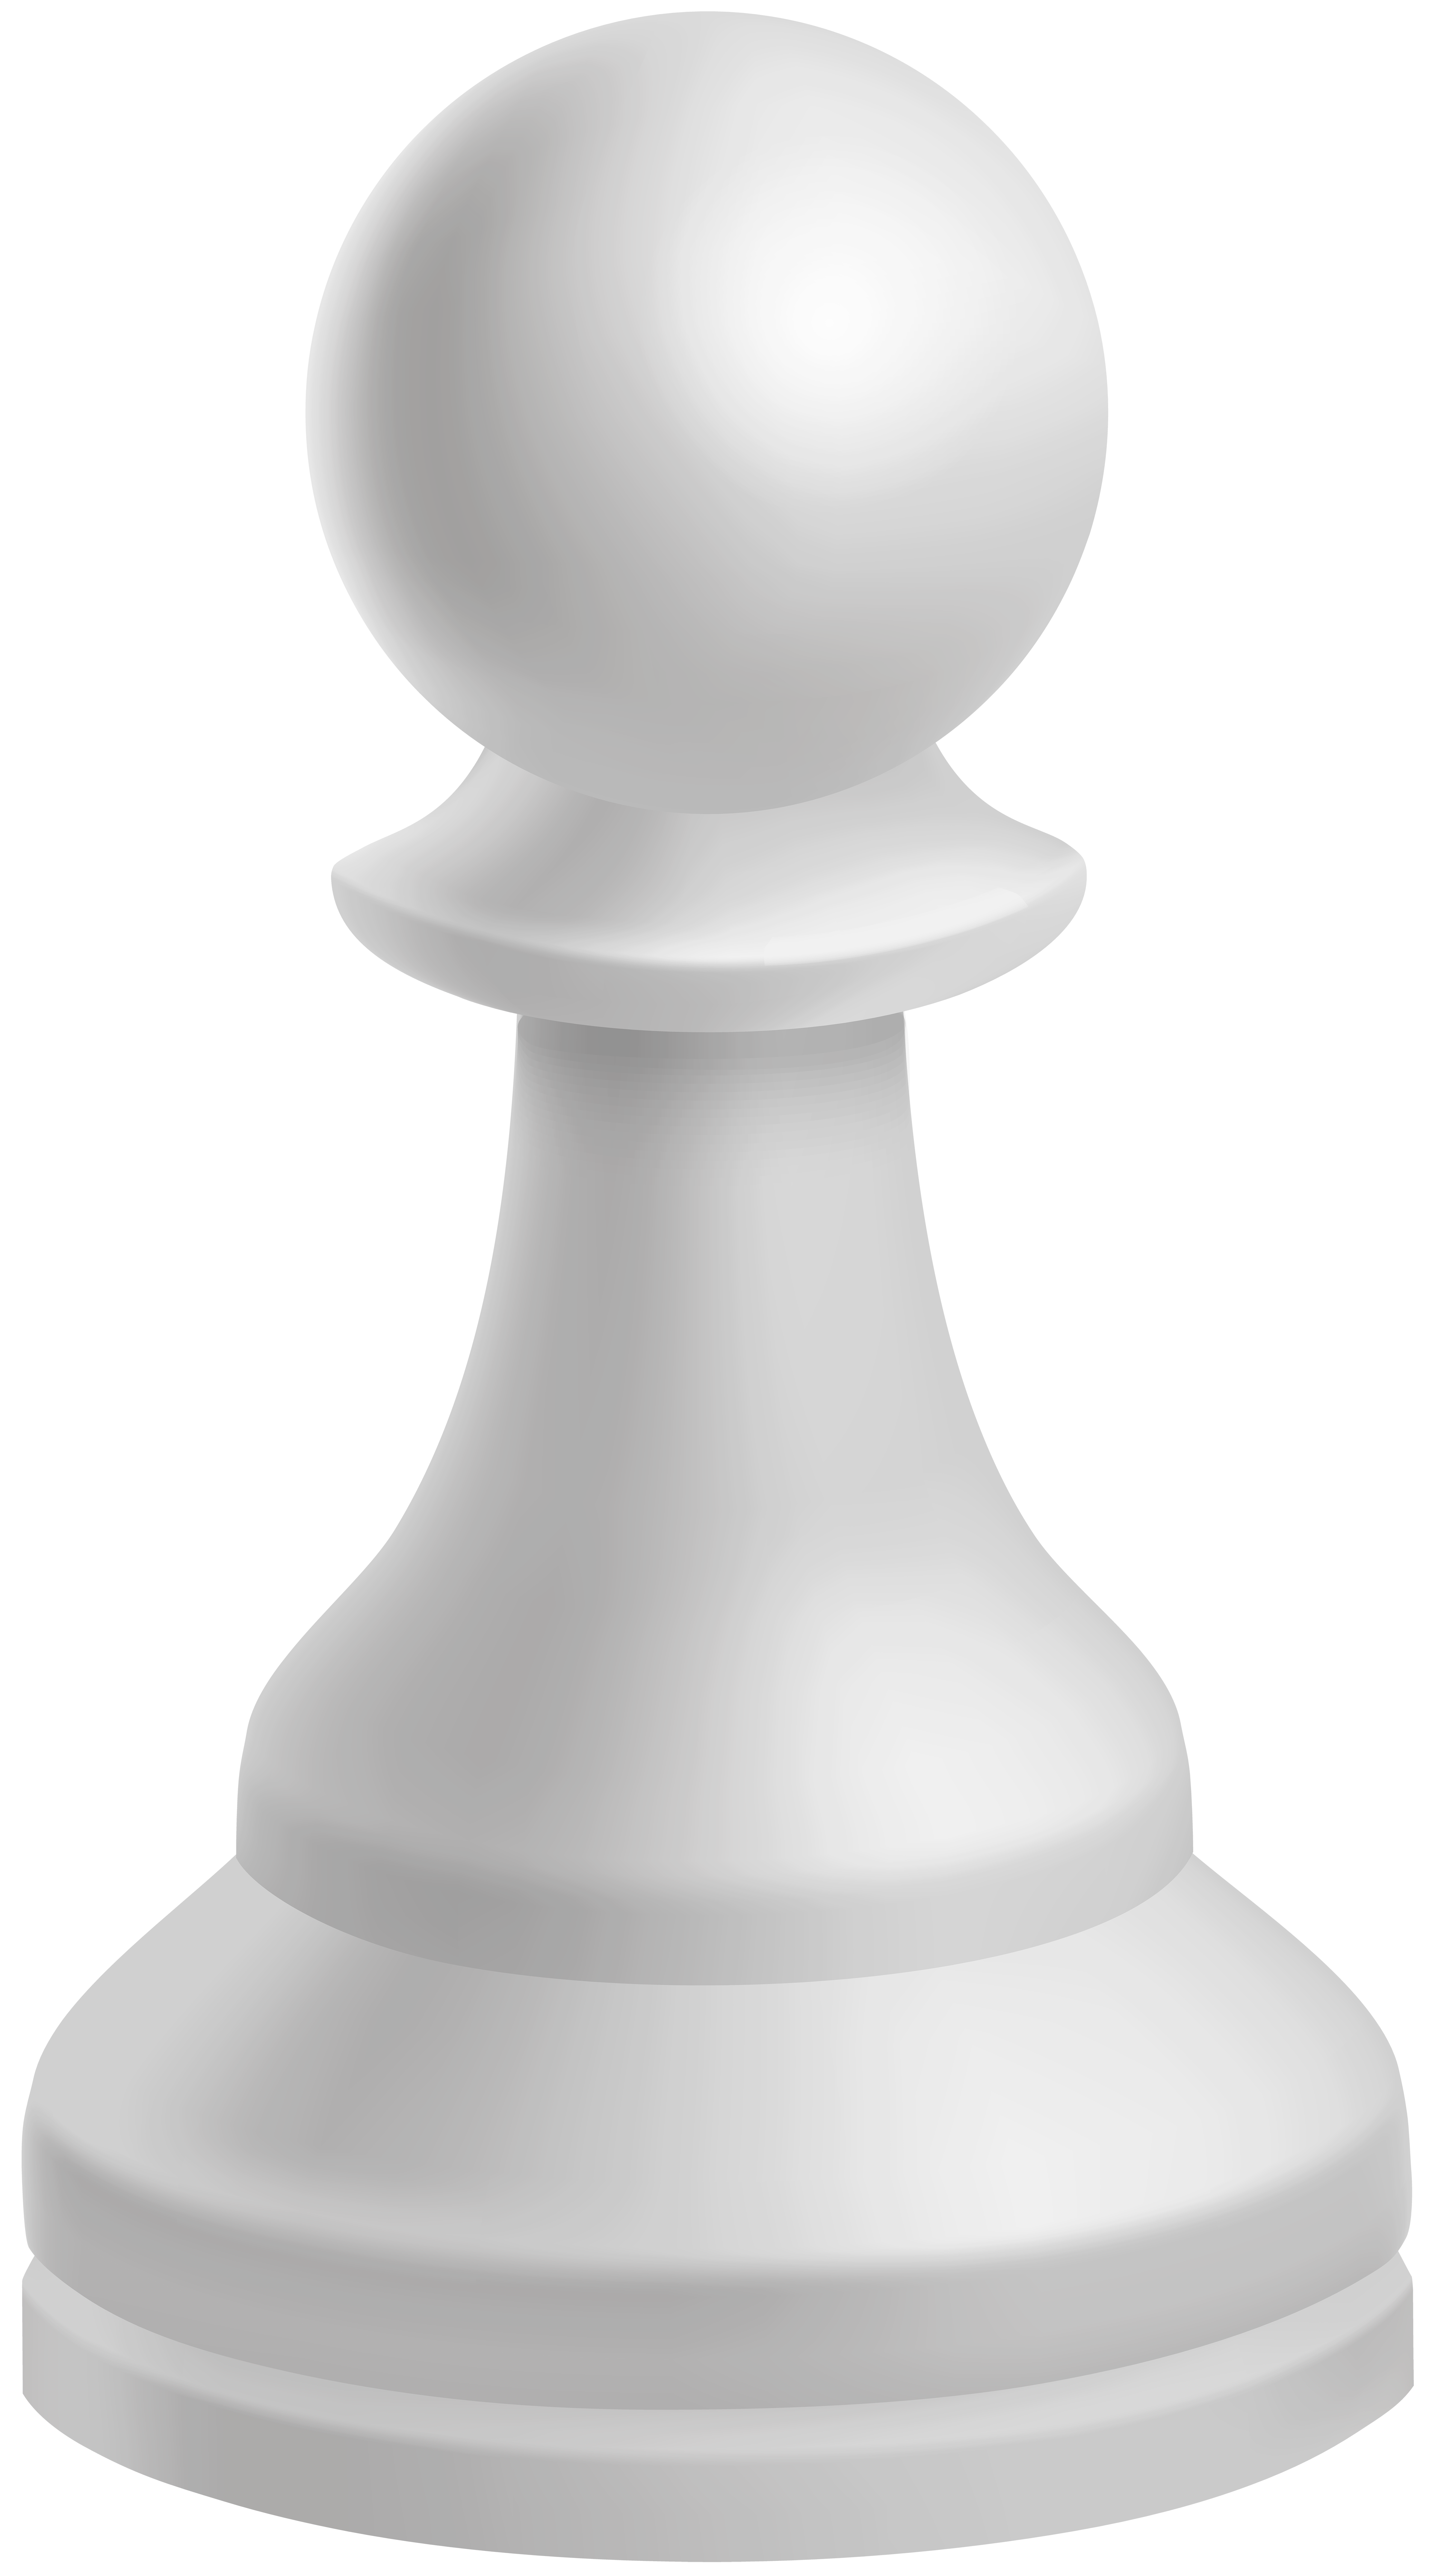 Pawn white chess.